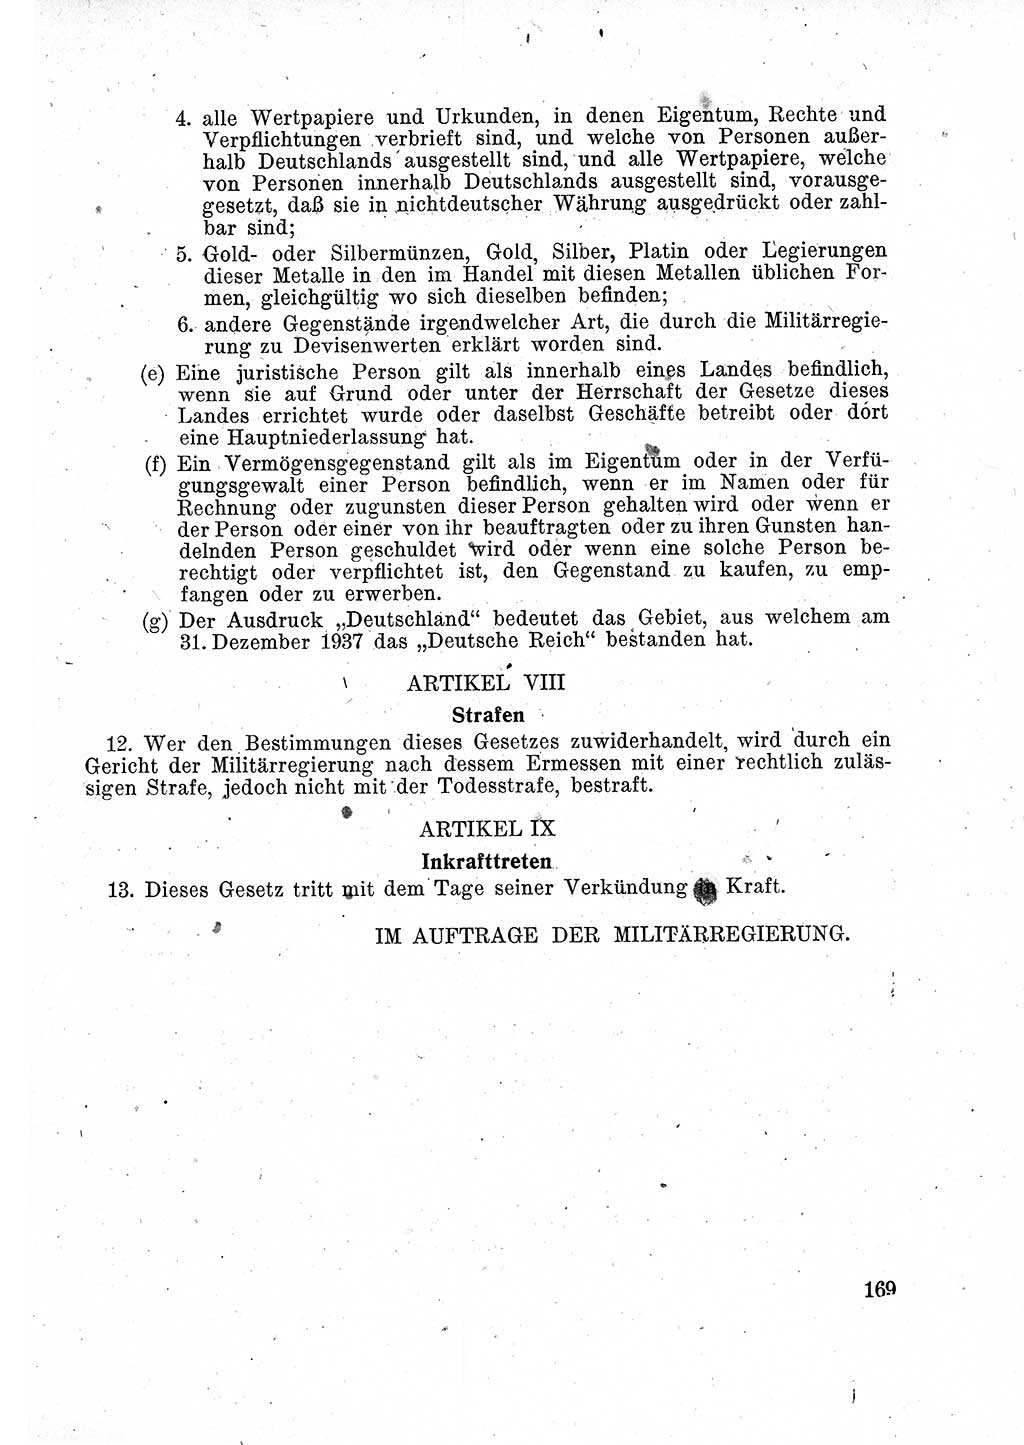 Das Recht der Besatzungsmacht (Deutschland), Proklamationen, Deklerationen, Verordnungen, Gesetze und Bekanntmachungen 1947, Seite 169 (R. Bes. Dtl. 1947, S. 169)